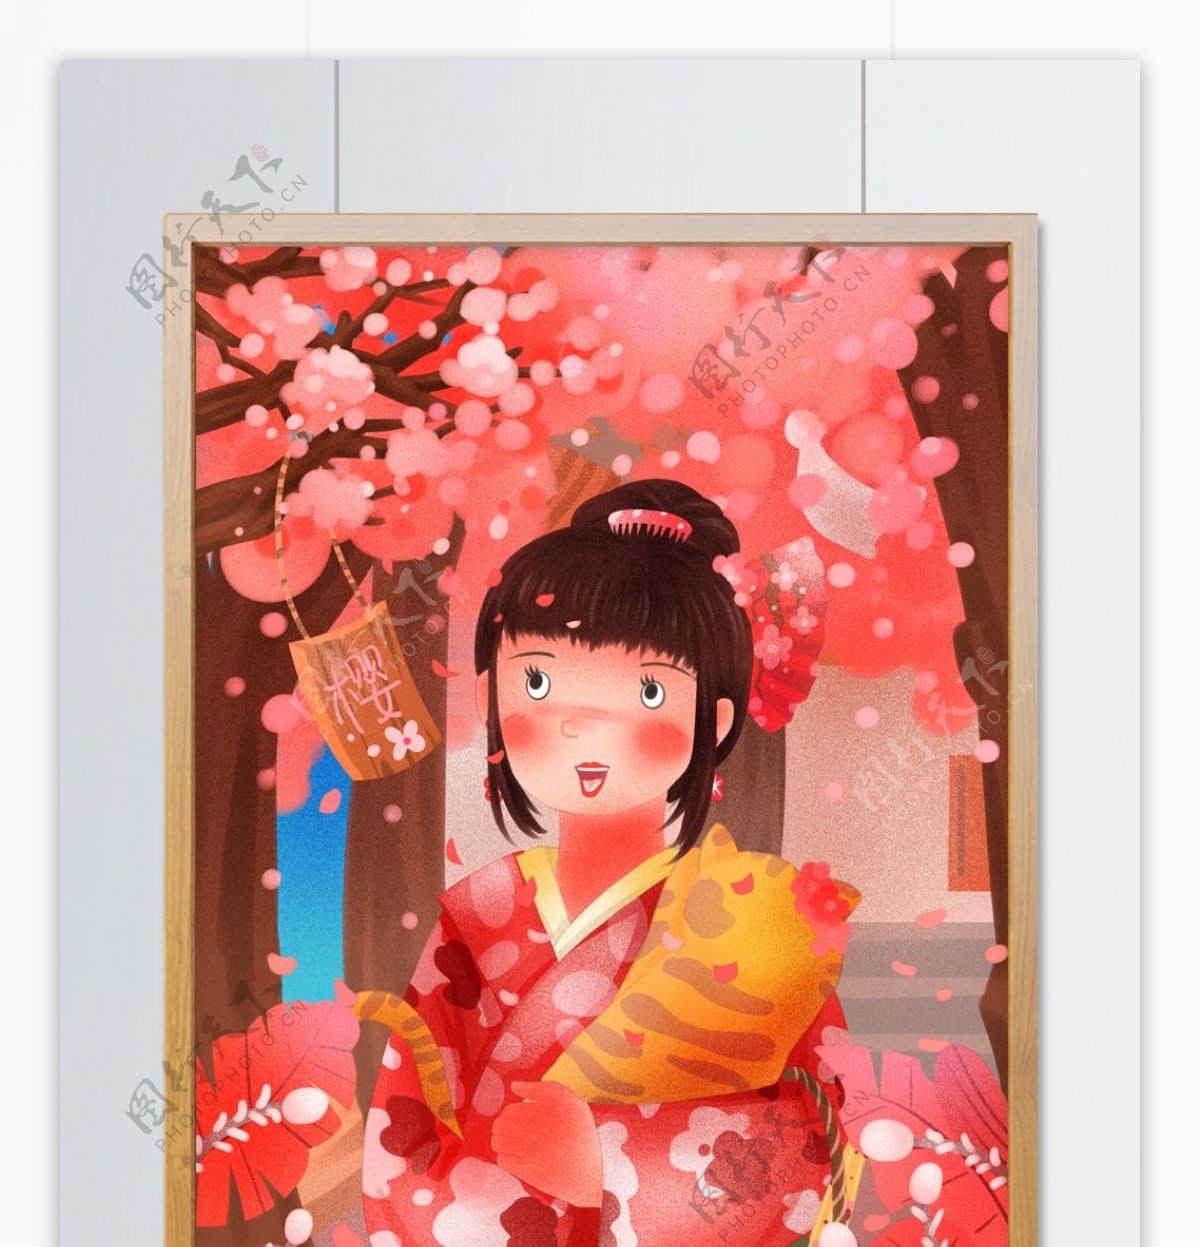 日本樱花节抱猫赏樱花的和服女孩唯美插画